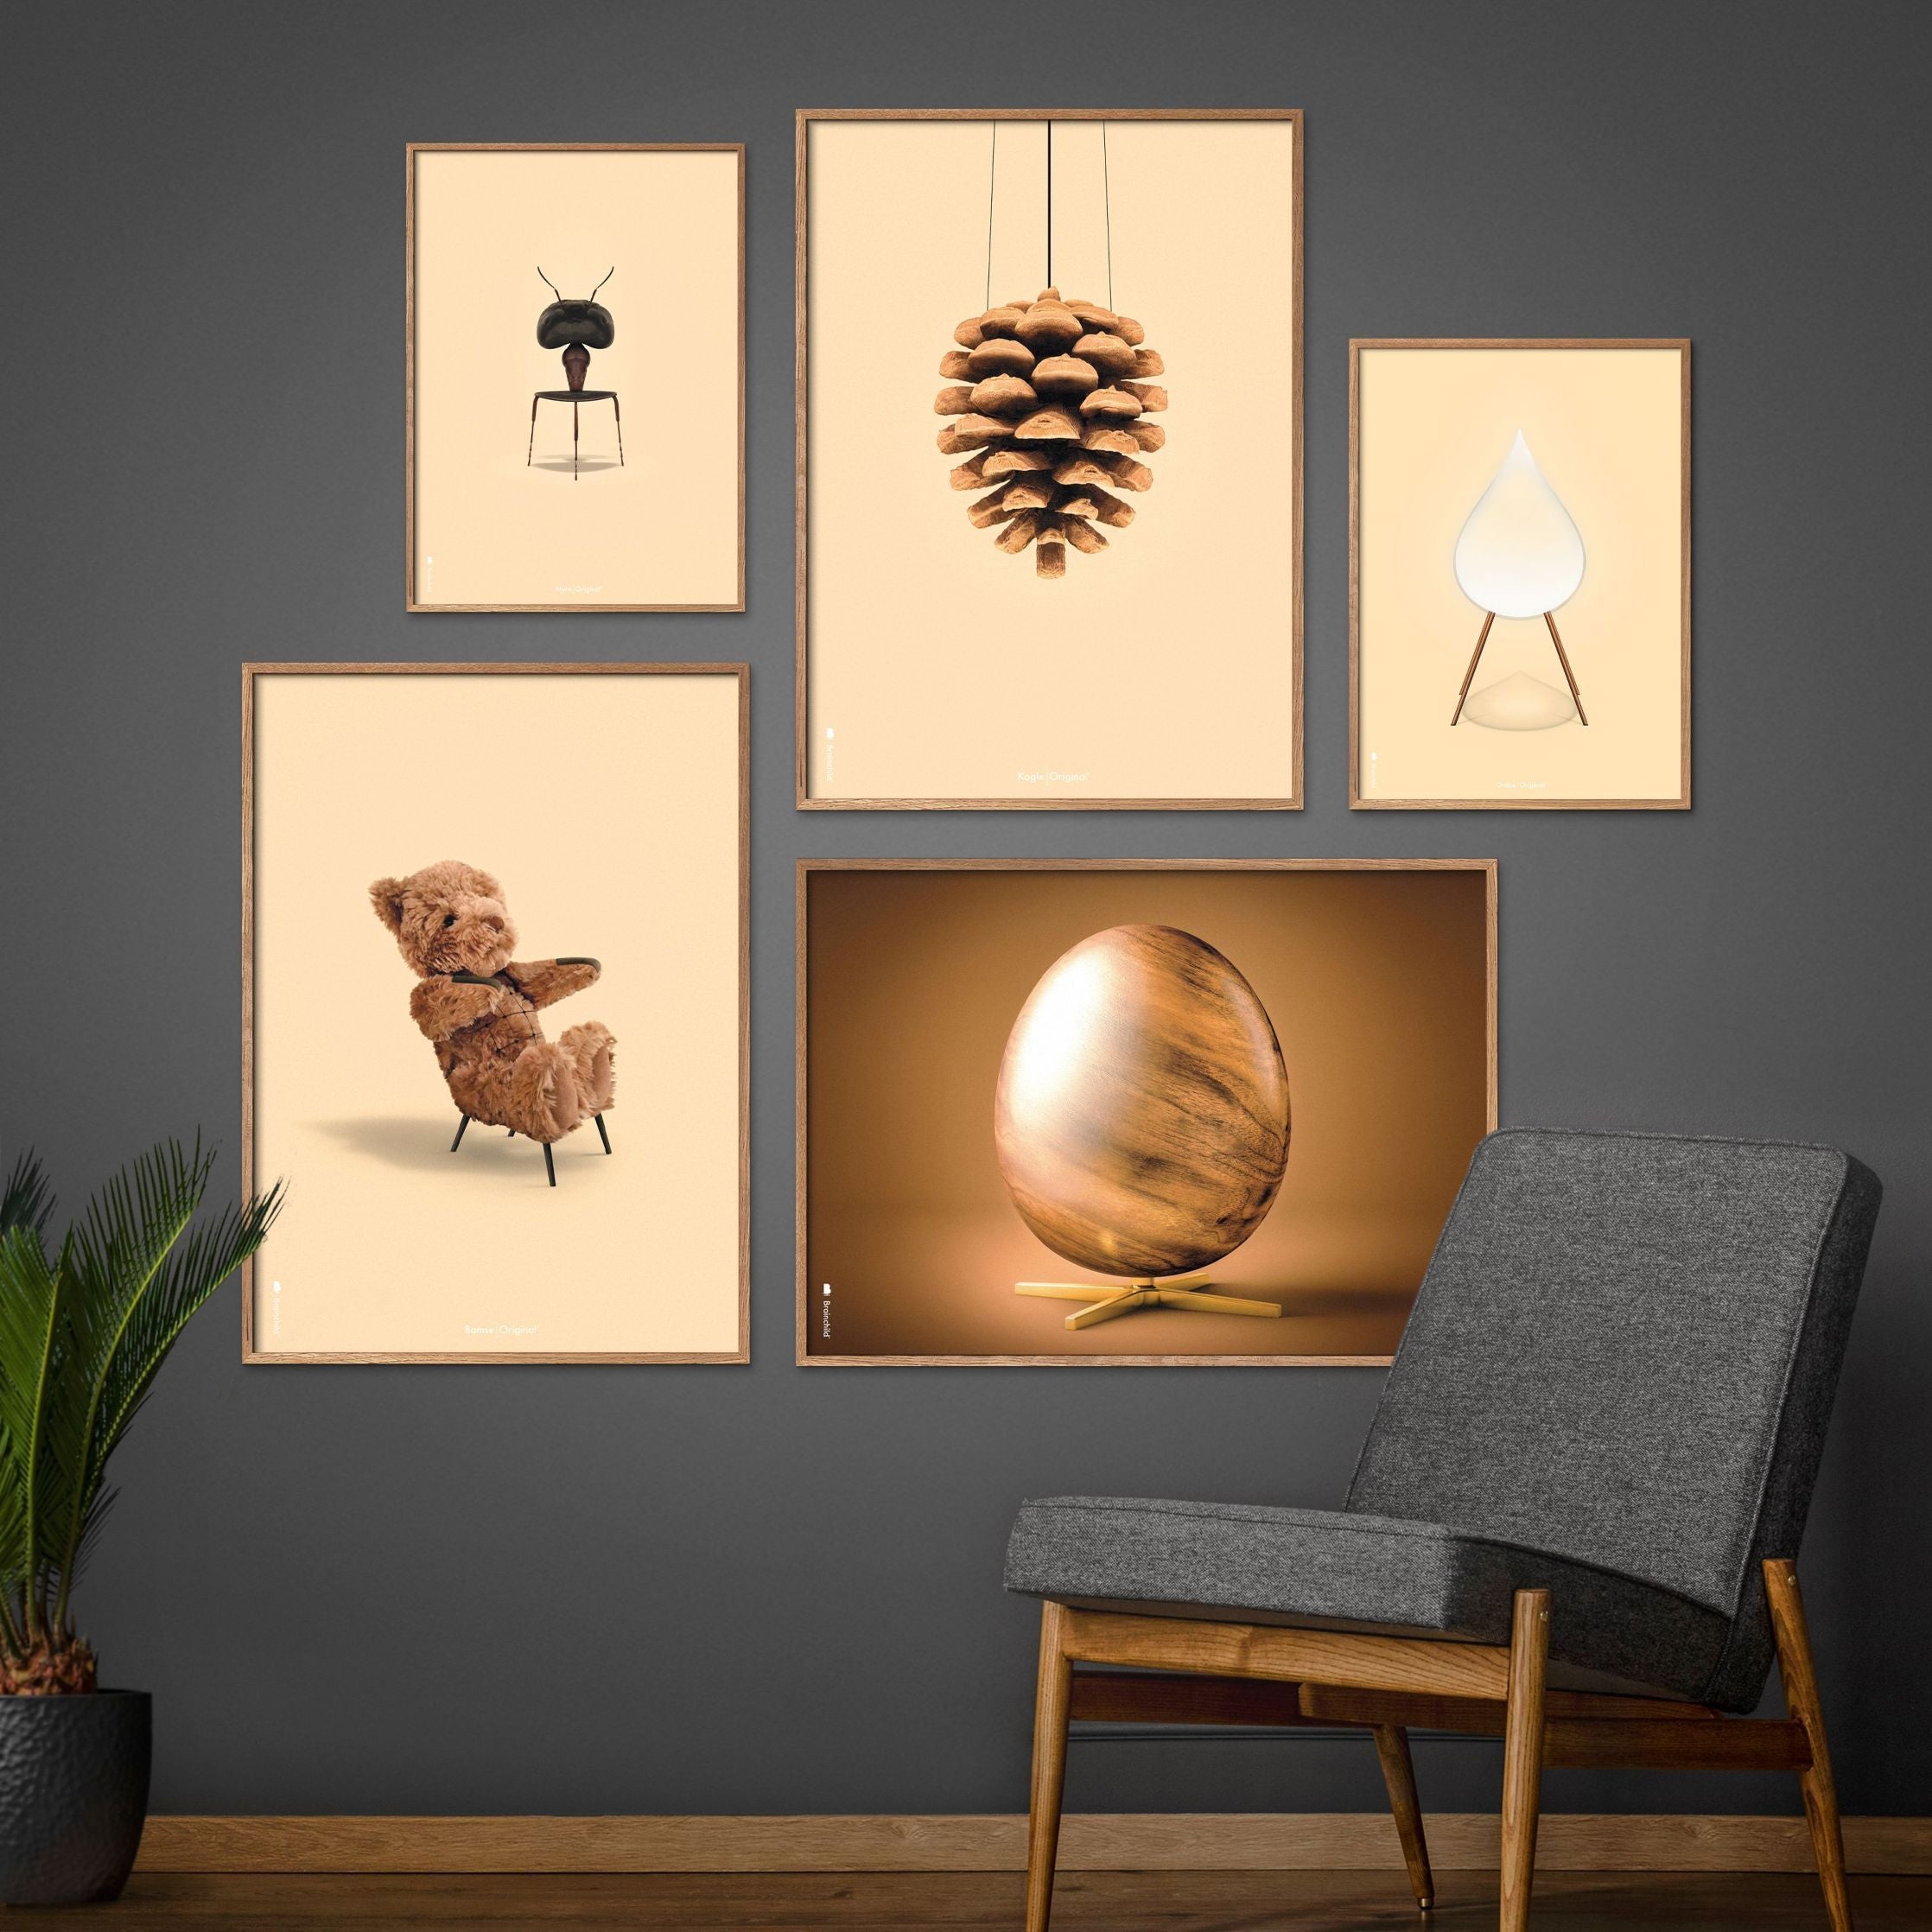 Brainchild Egg Cross Format Poster, Frame Made Of Light Wood 30x40 Cm, Brown